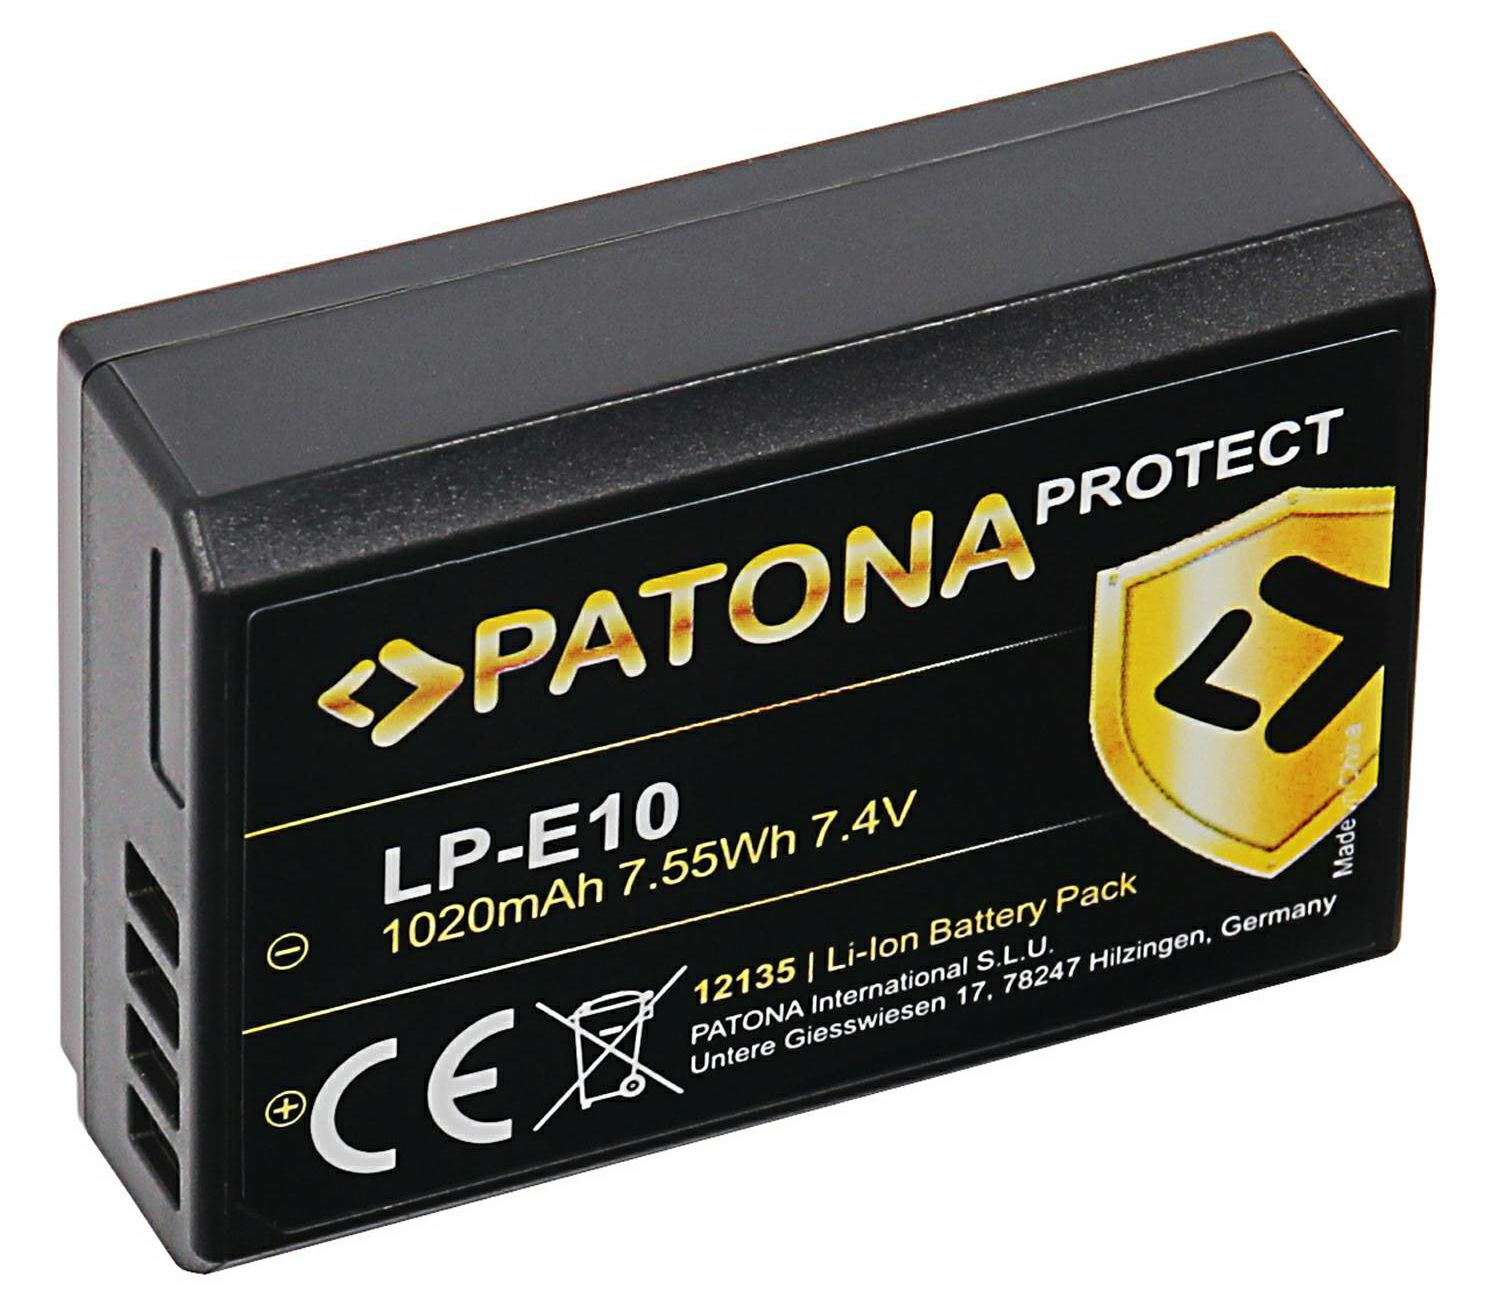 Patona baterija za Canon LP-E10 Protect 1020mAh (1100D 1200D 1300D)